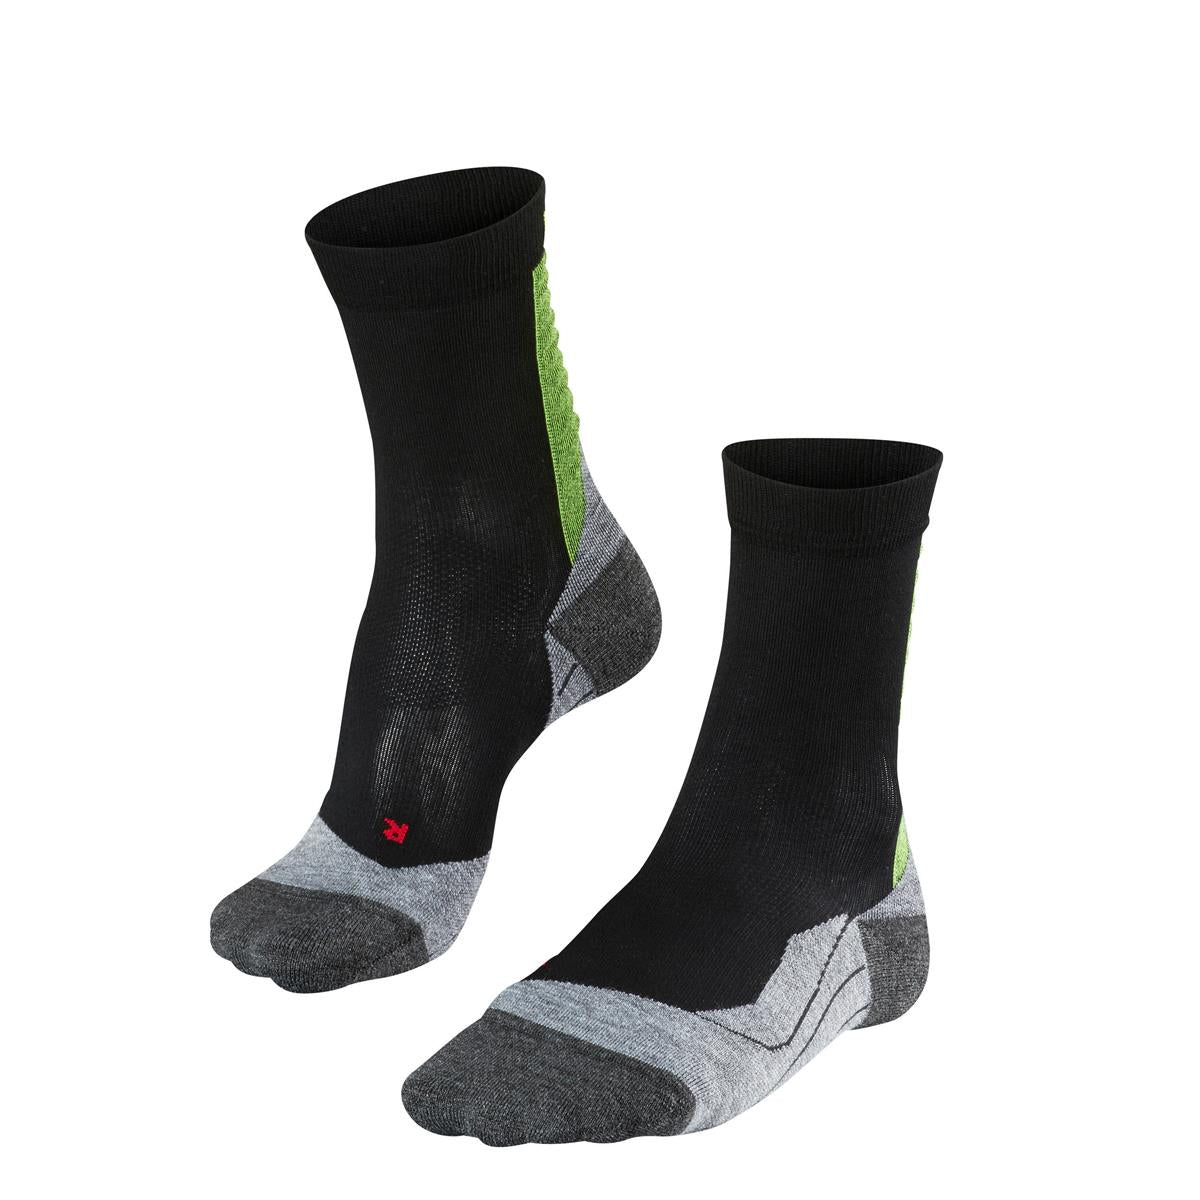 Run Achilles Health Socks - Men's